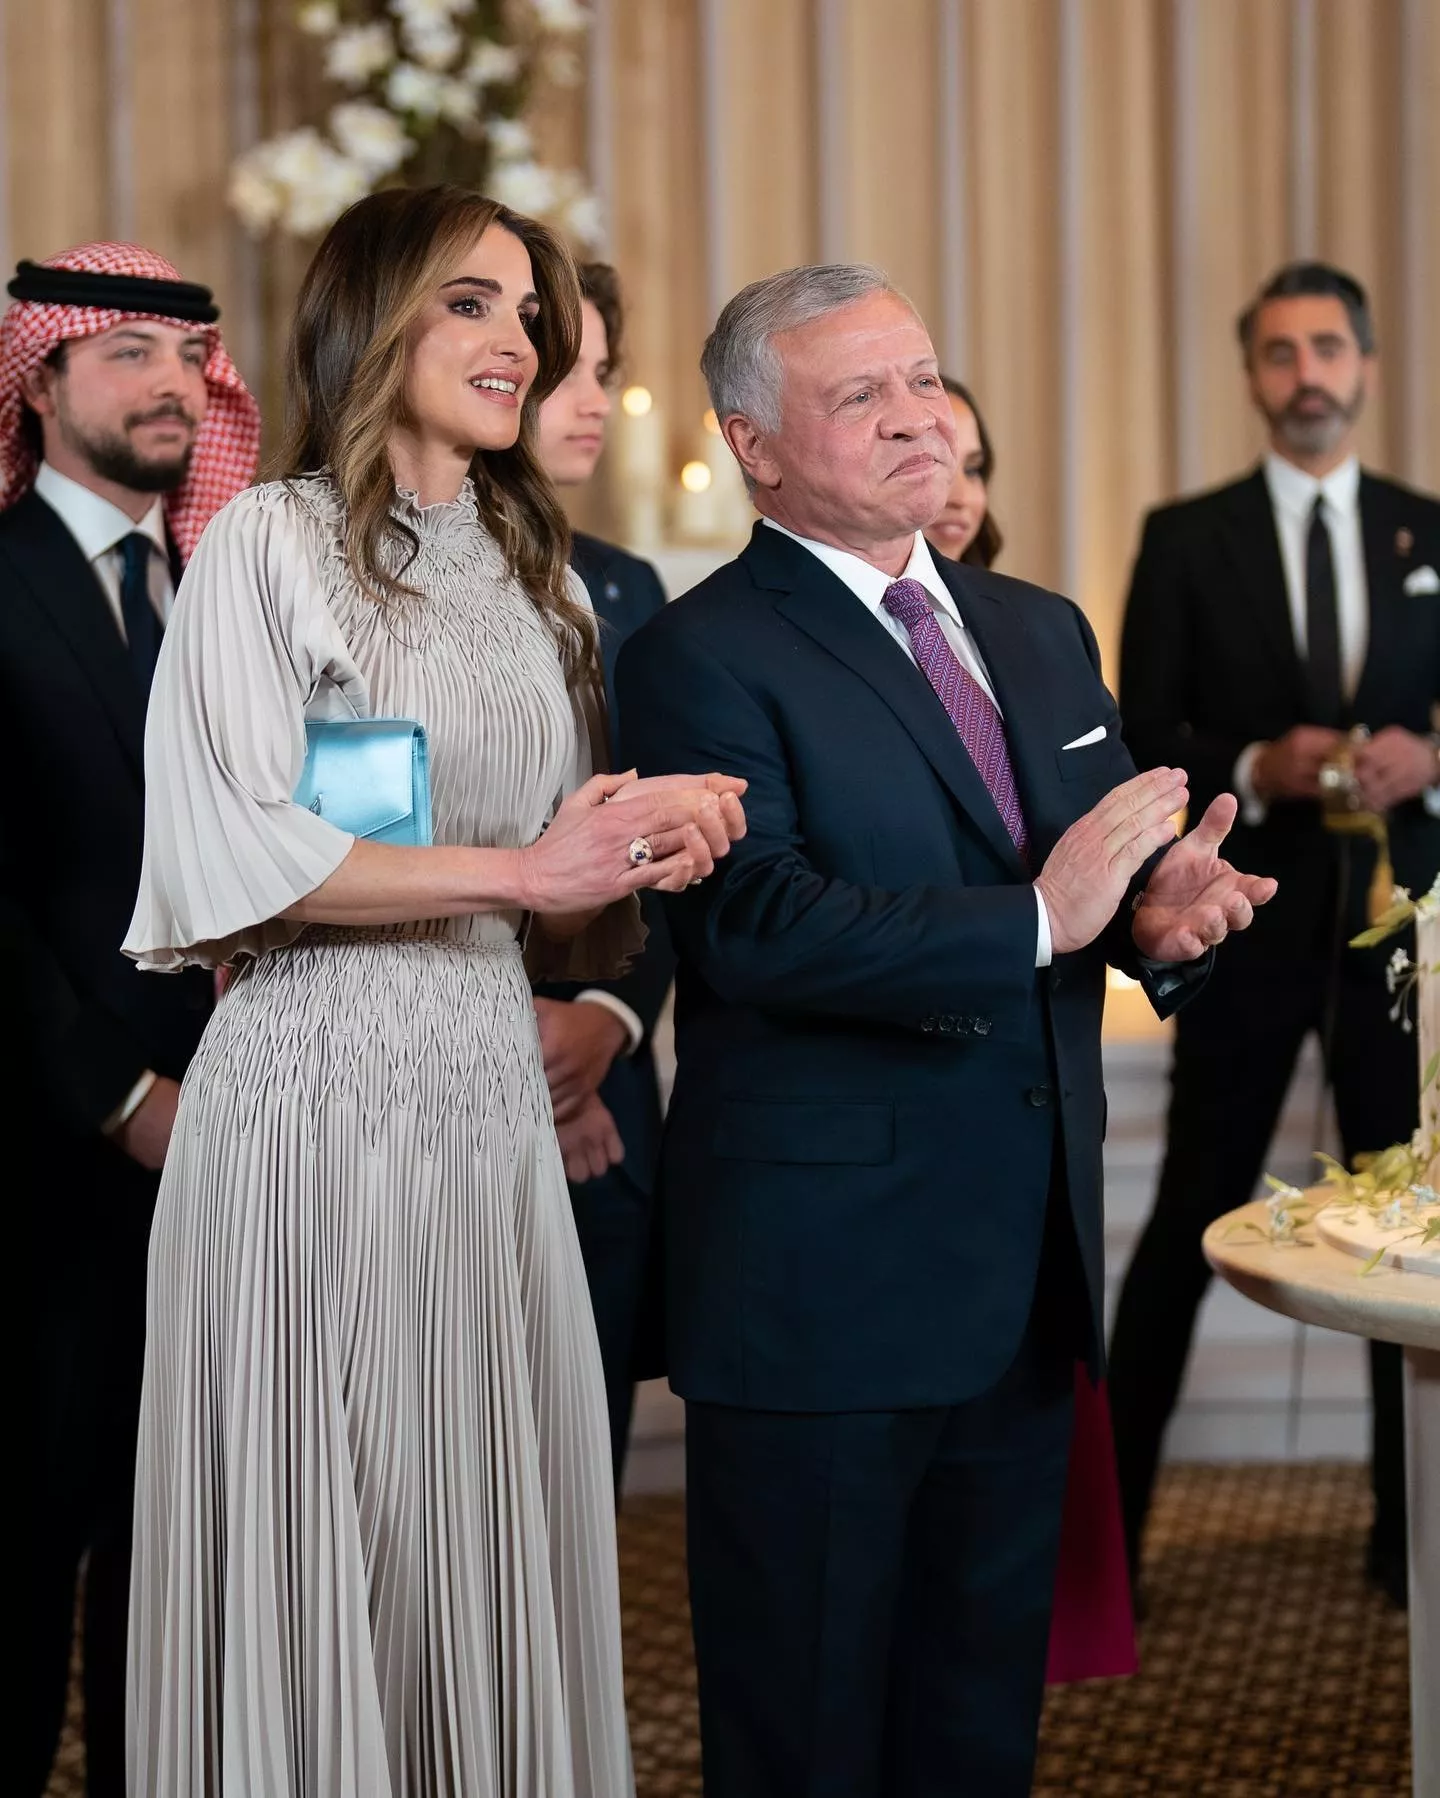 الملكة رانيا في حفل زواج الاميرة ايمان: طلة مينيمالية راقية